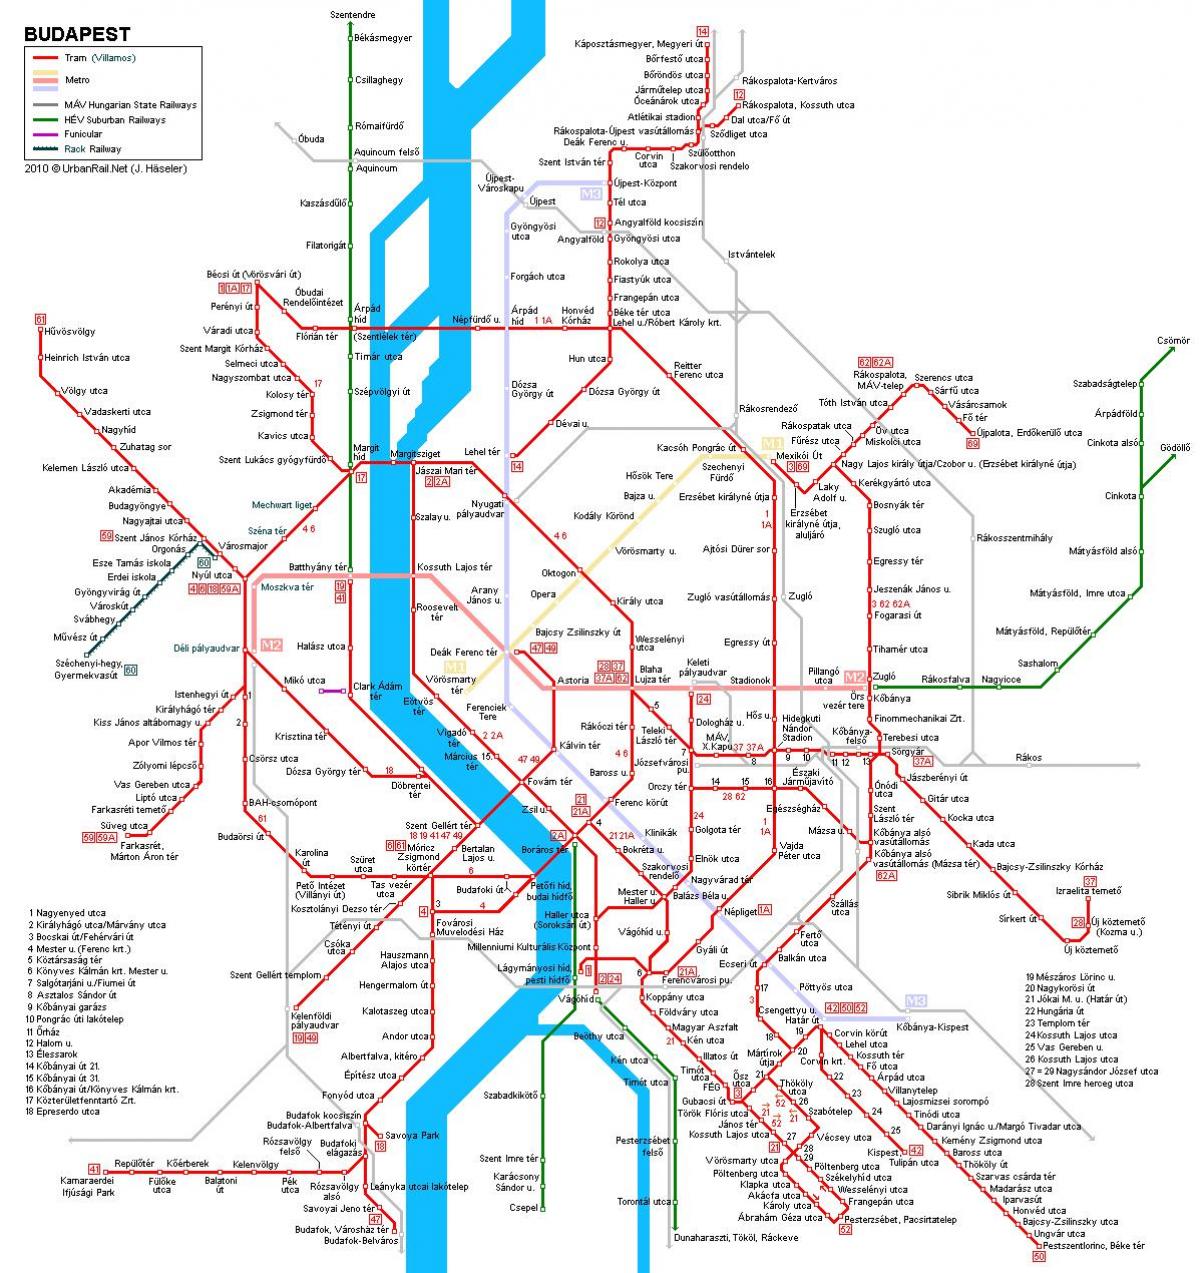 будапешт төмөр замын газрын зураг нь